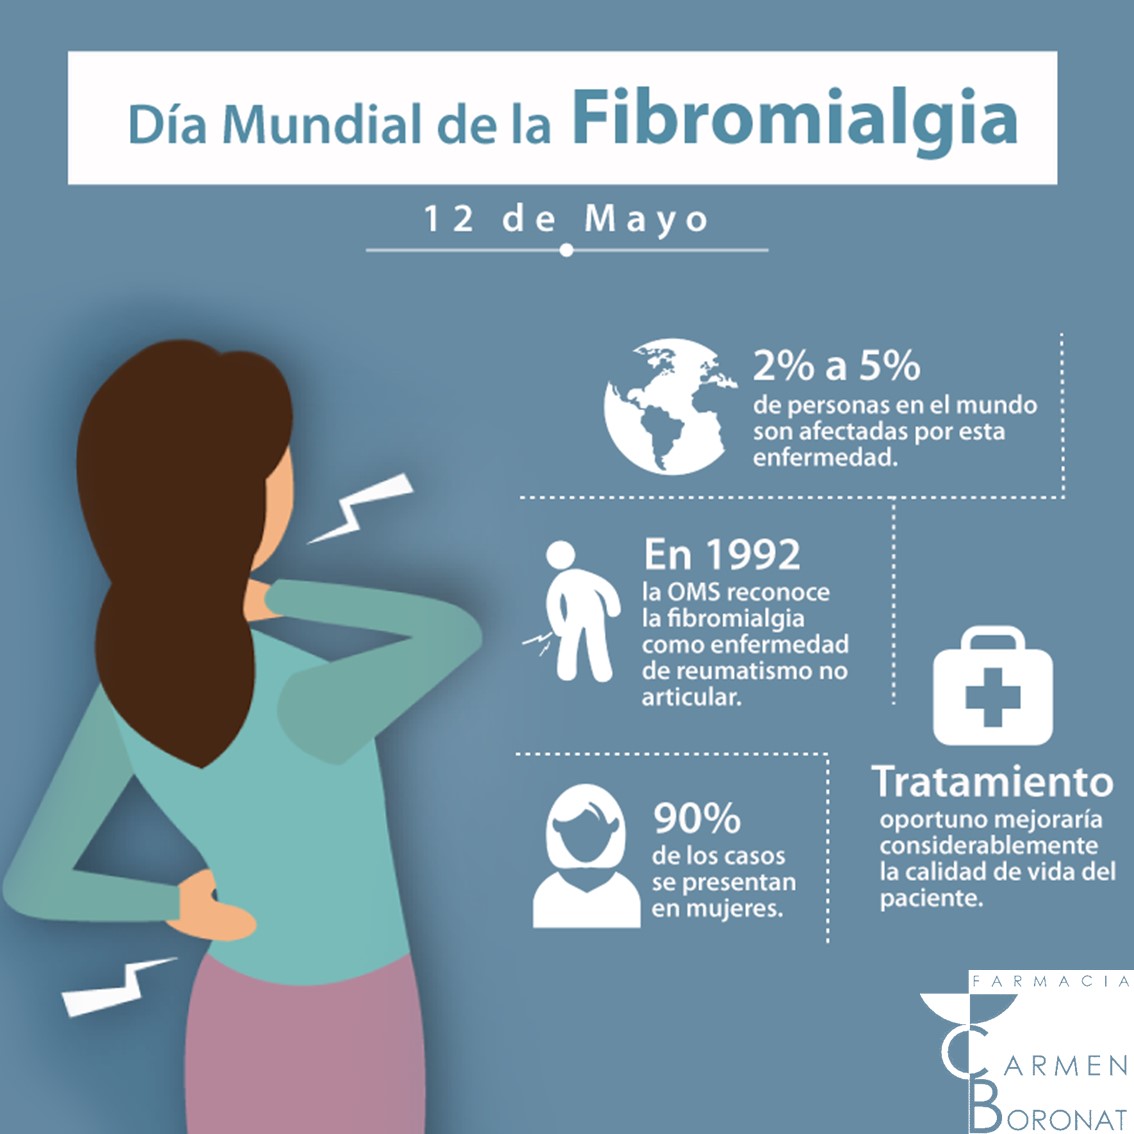 Hoy, se conmemora el #DíaMundial de la #Fibromialgia y del #SíndromedeFatigaCrónica, ambas son enfermedades que atacan el sistema nervioso creando deterioro crónico del cuerpo.
La fibromialgia afecta a un 2-3% de la población
👉¡No estás sol@!

#Farmacia #FarmaciaBoronat #Madrid